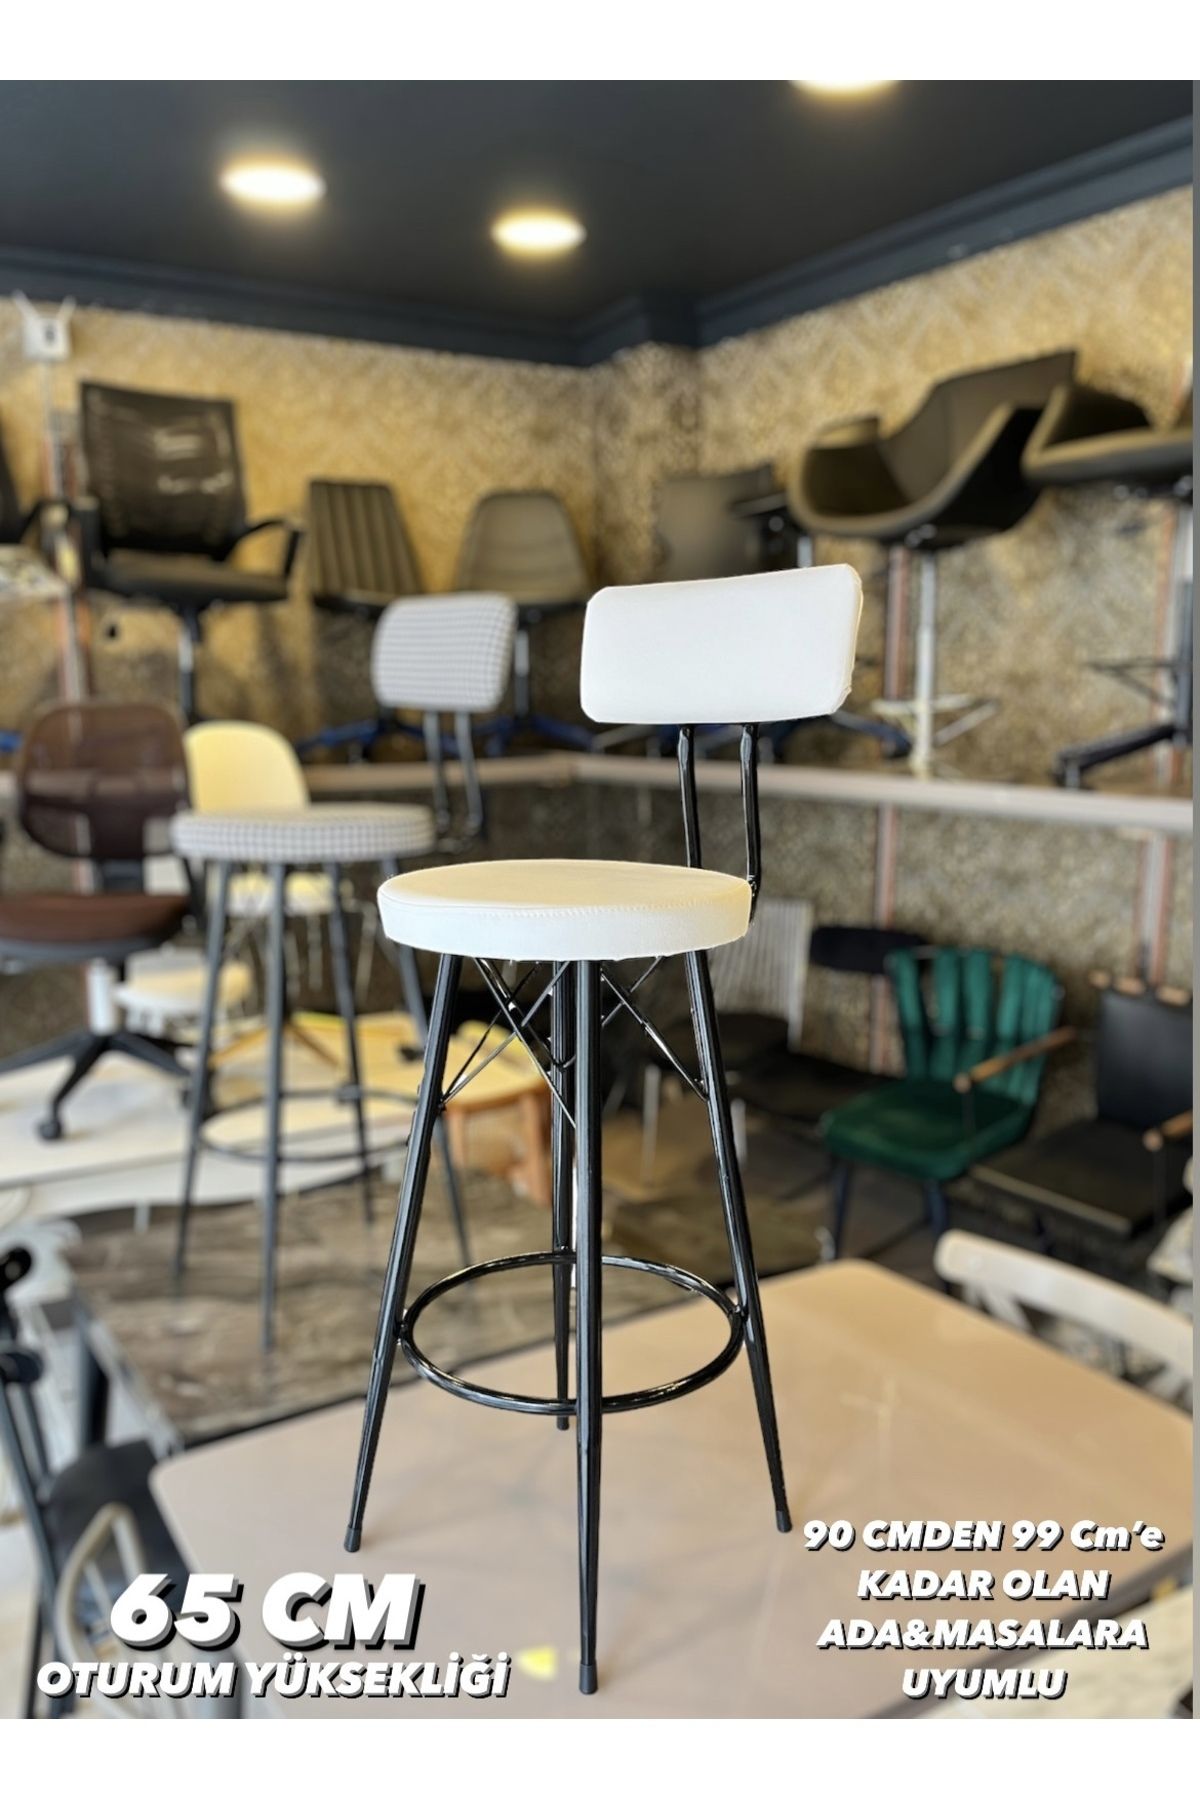 Sandalye Shop Yeni Tasarım Mila Bar Sandalyesi 65 cm Beyaz,Deri.90 cm ile 99 cme kadar olan Ada&Masalara uyumlu